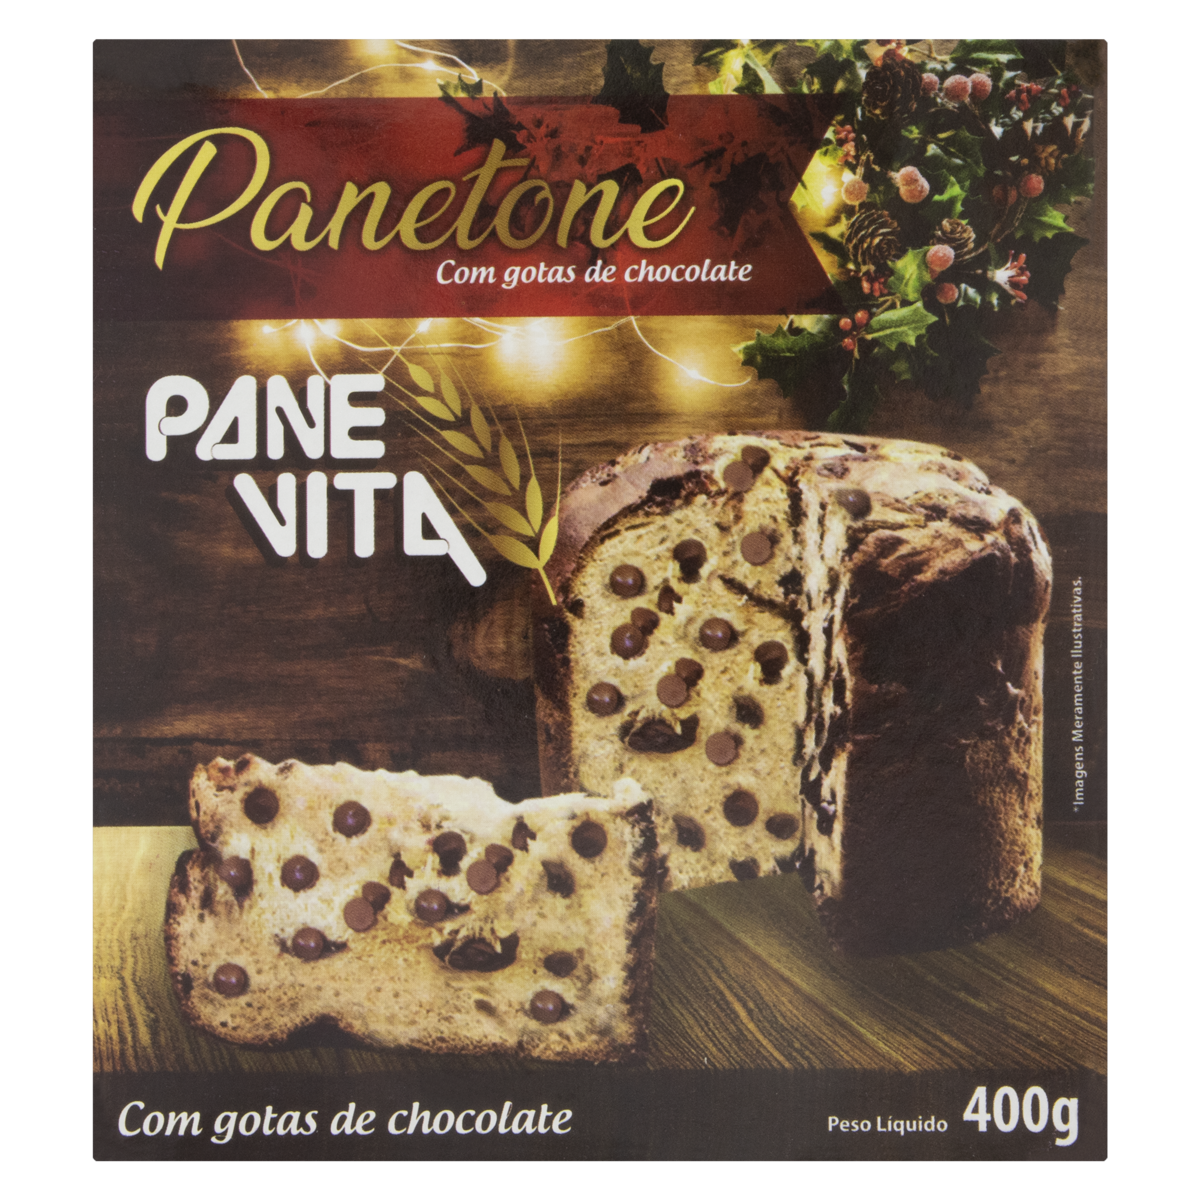 7896280600749 - PANETTONE COM GOTAS DE CHOCOLATE PANEVITA CAIXA 400G